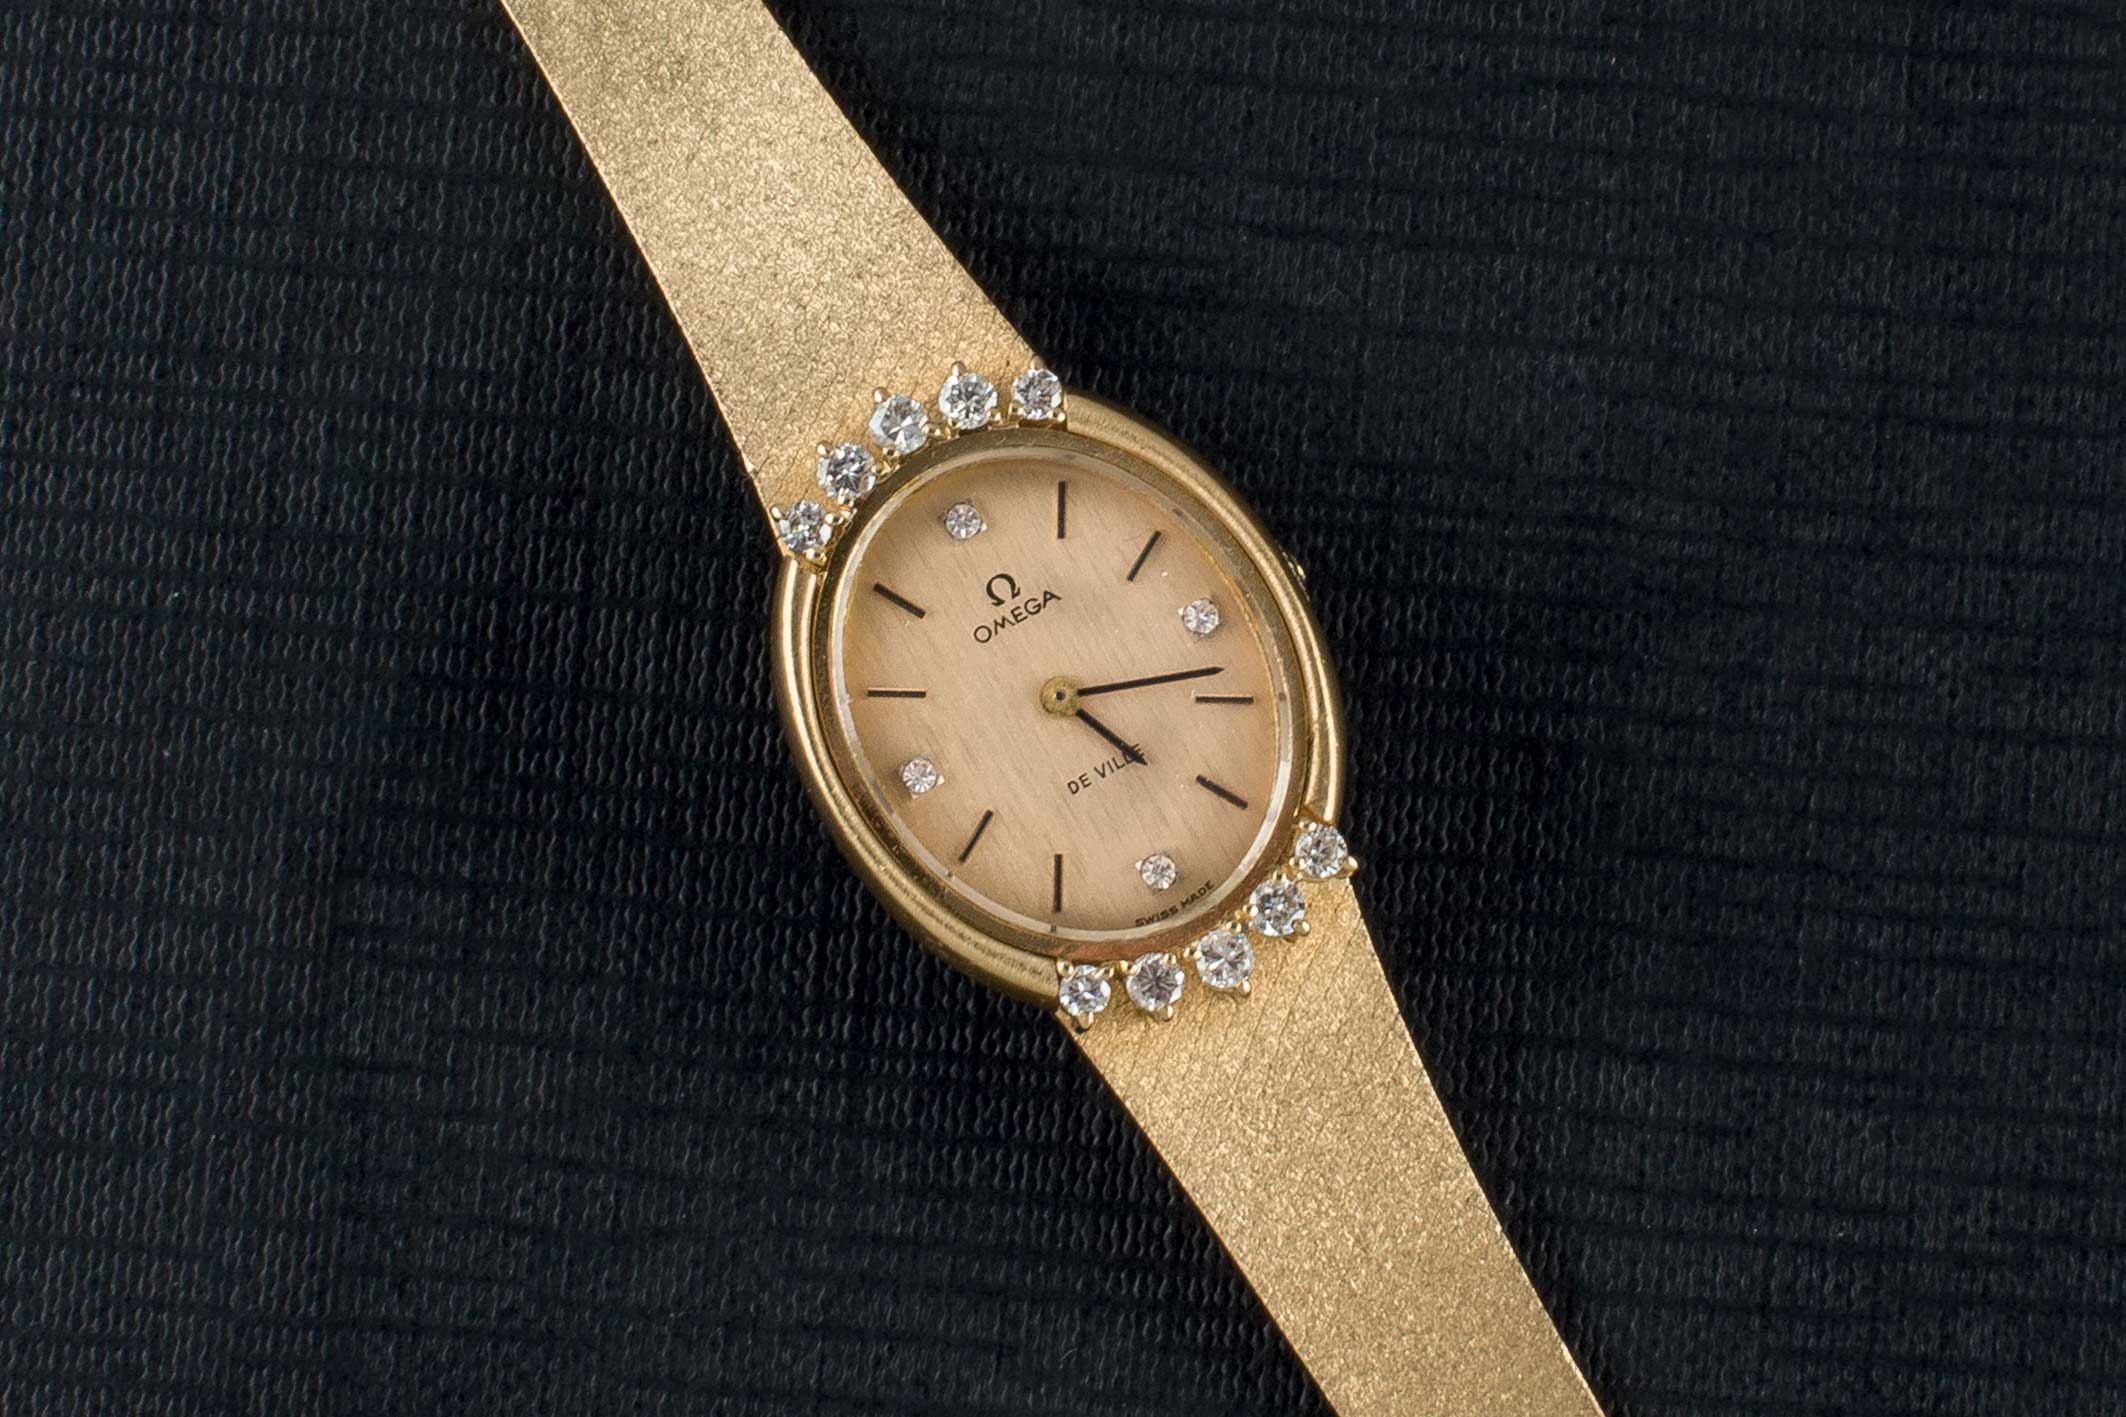 An Omega gold wrist watch. Reloj de pulsera para señora marca OMEGA, realizado en oro amarillo de 18